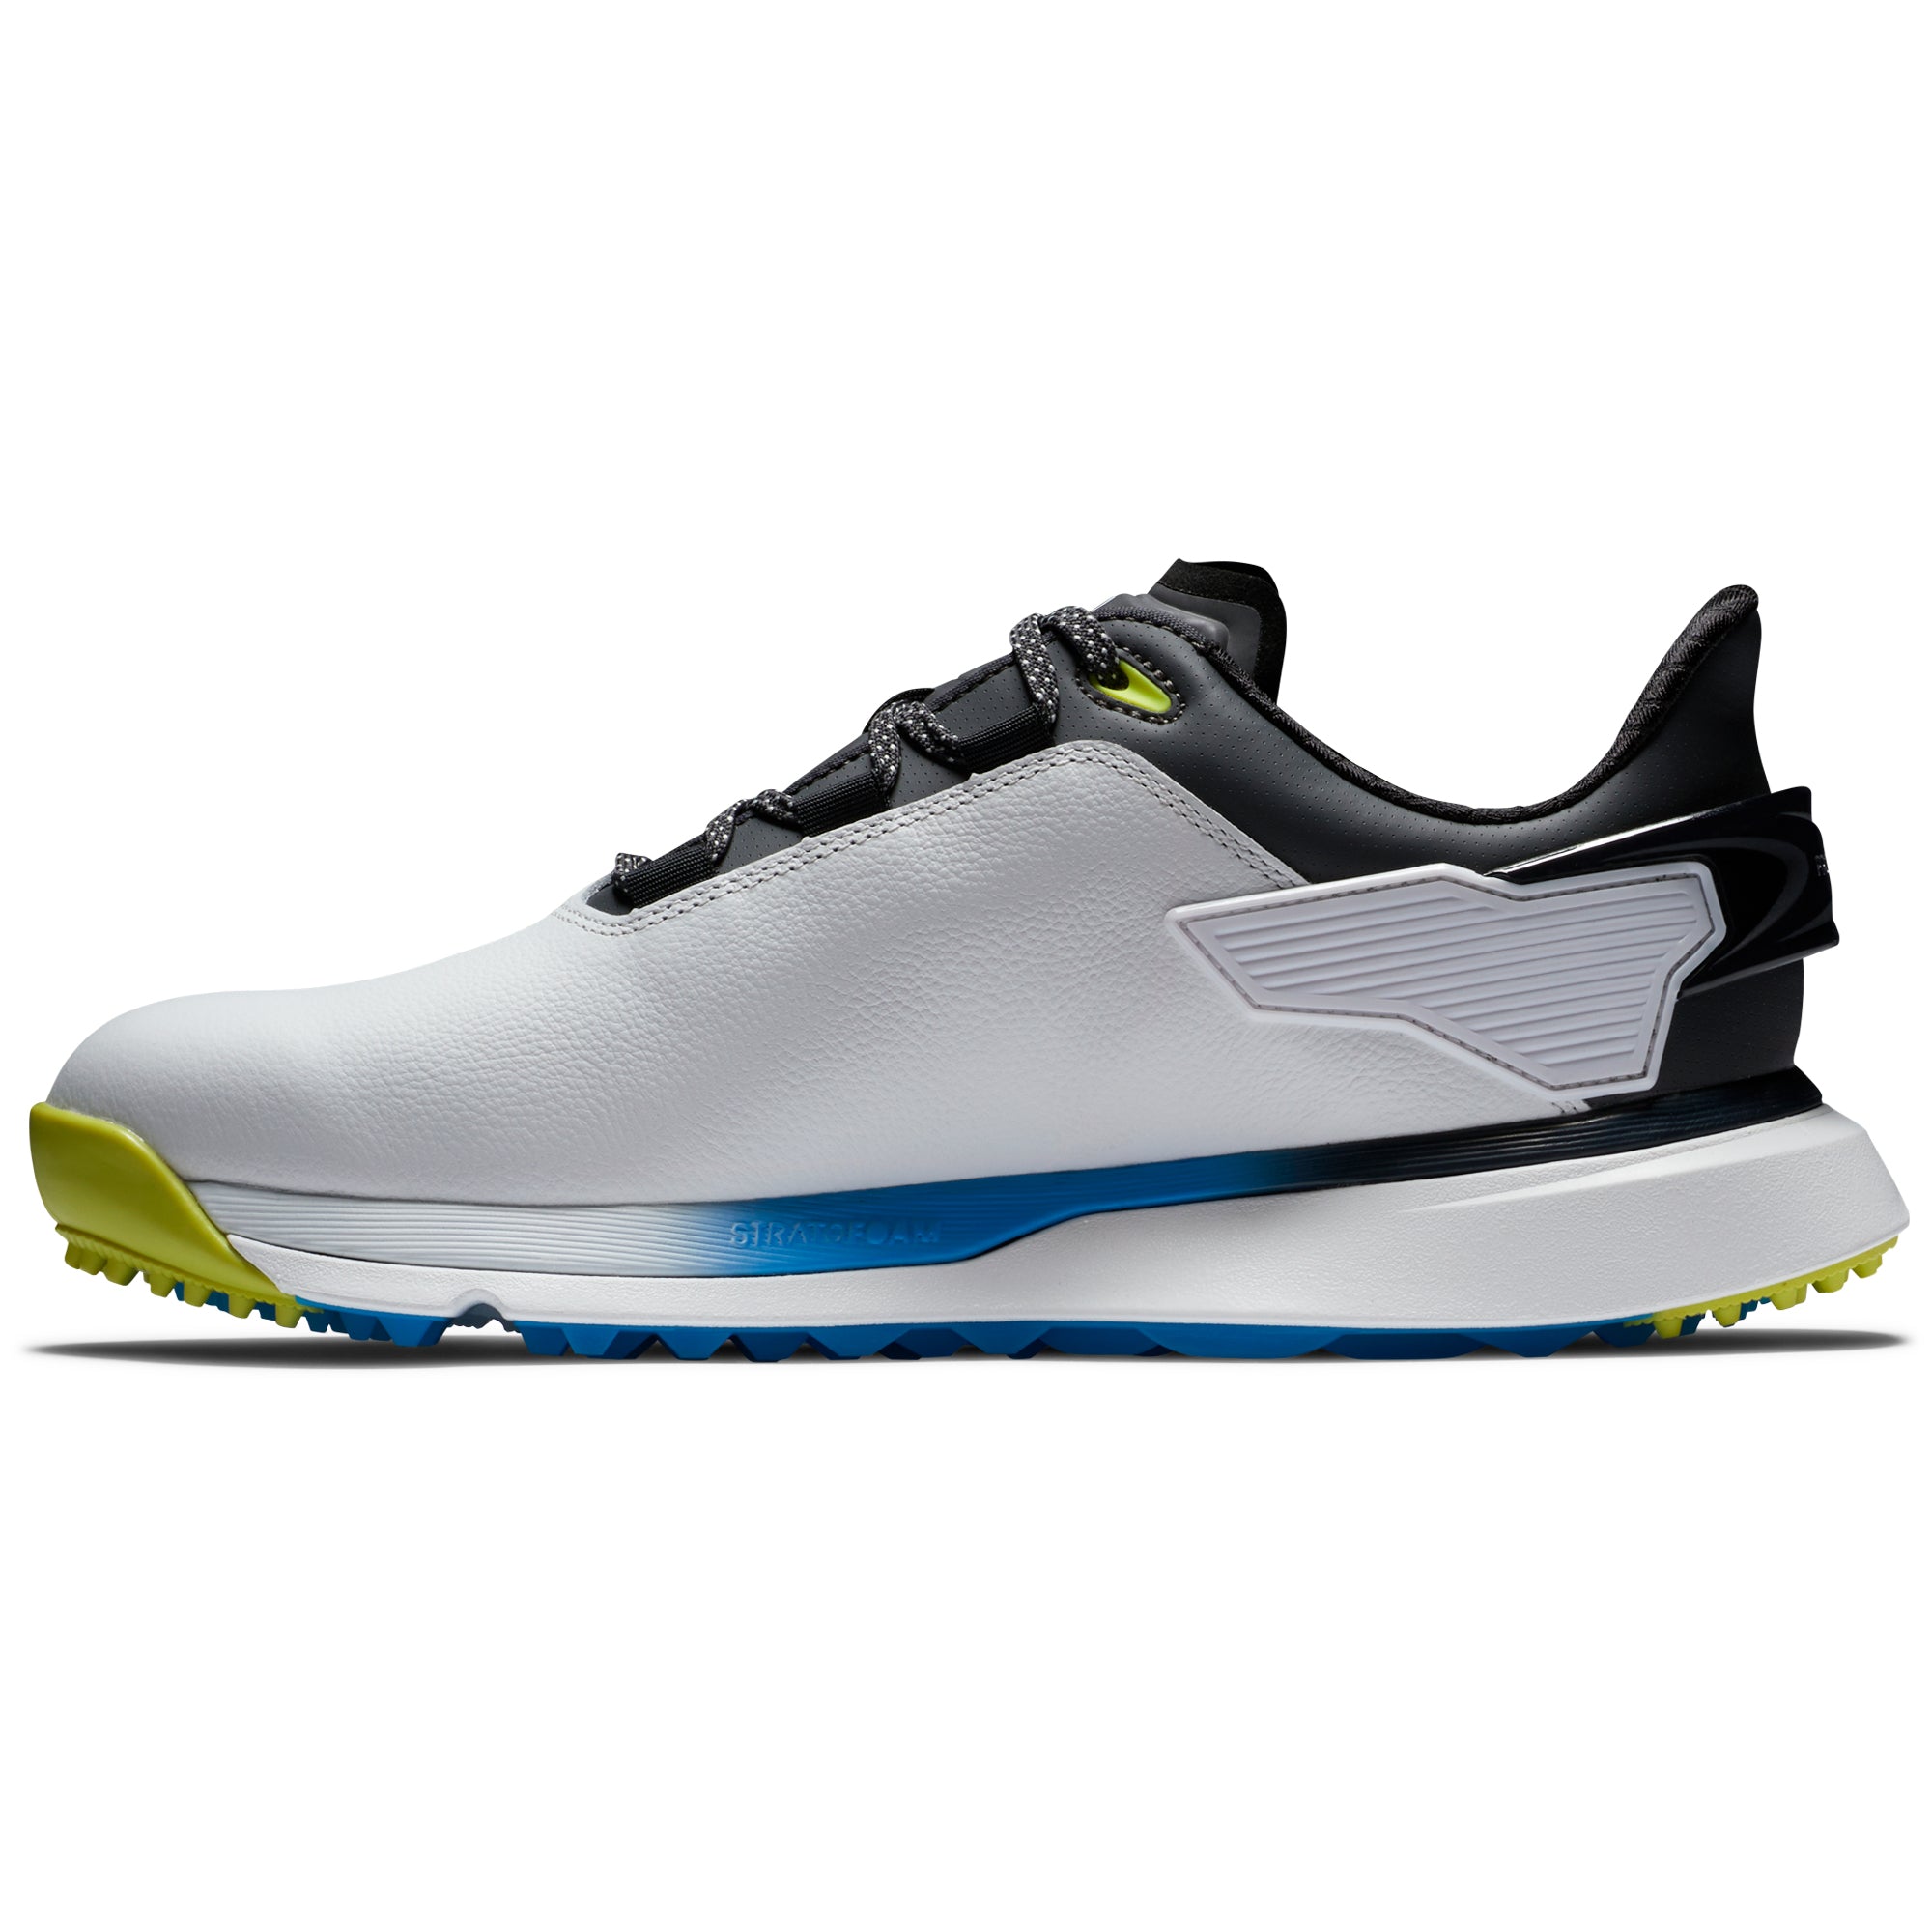 footjoy-pro-slx-carbon-golf-shoes-56918-white-black-multi